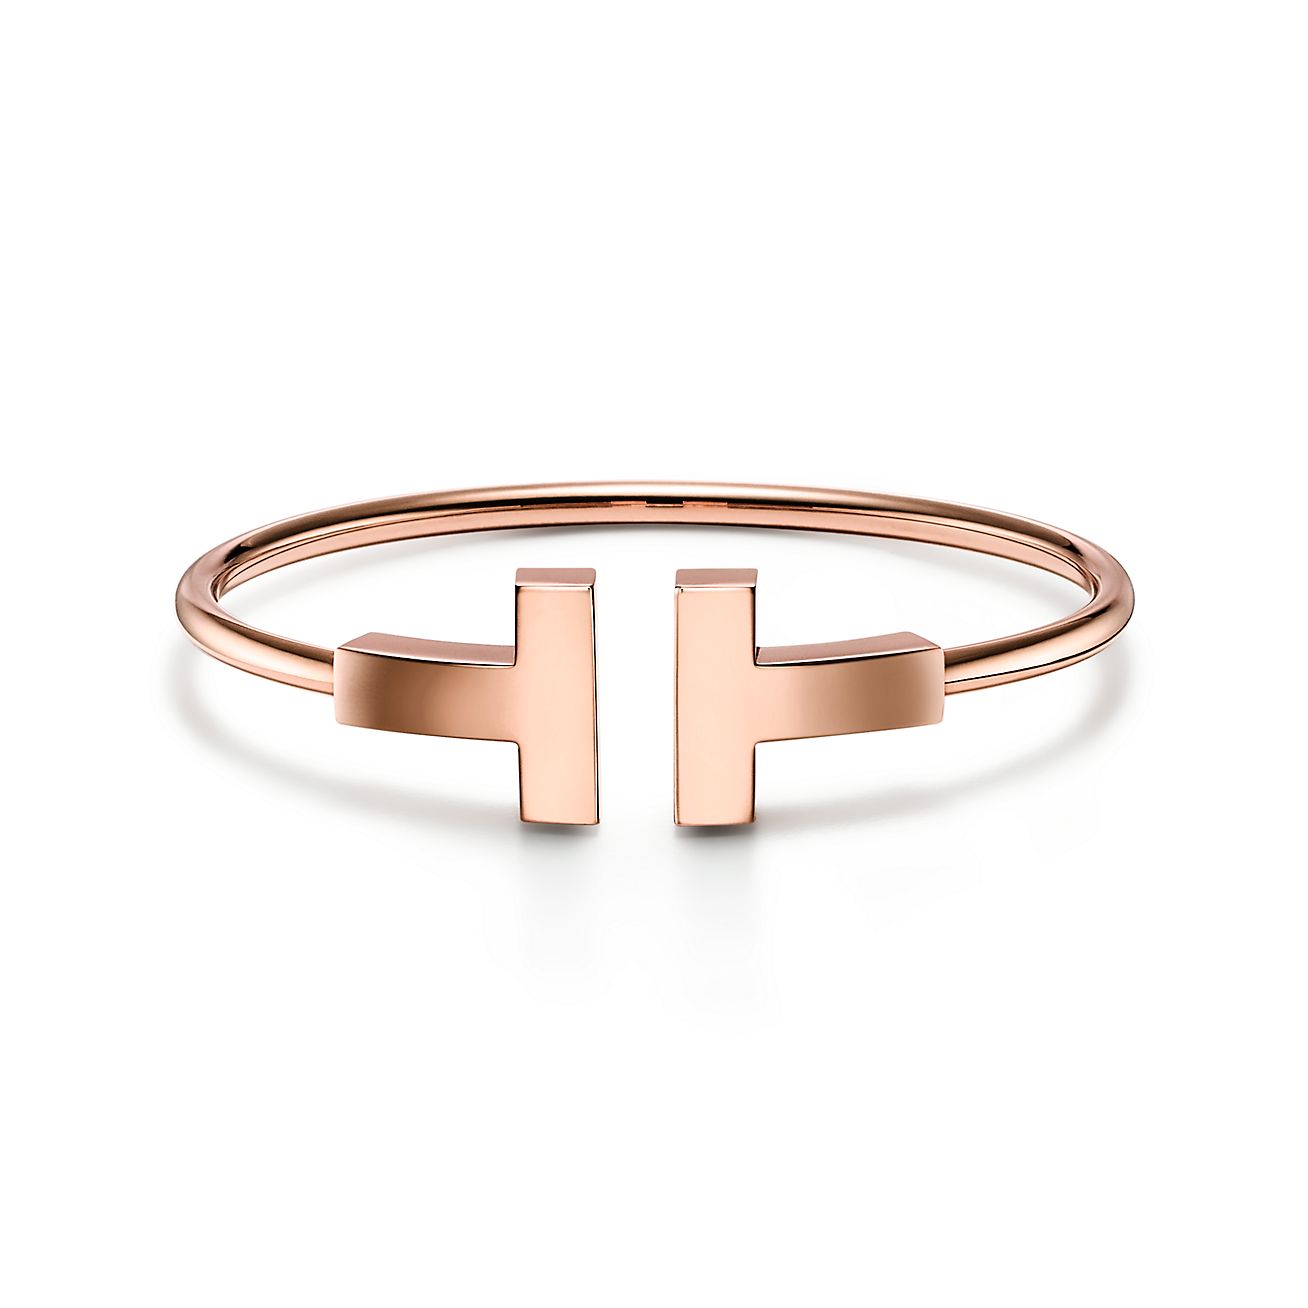 Tiffany T wide wire bracelet in 18k 